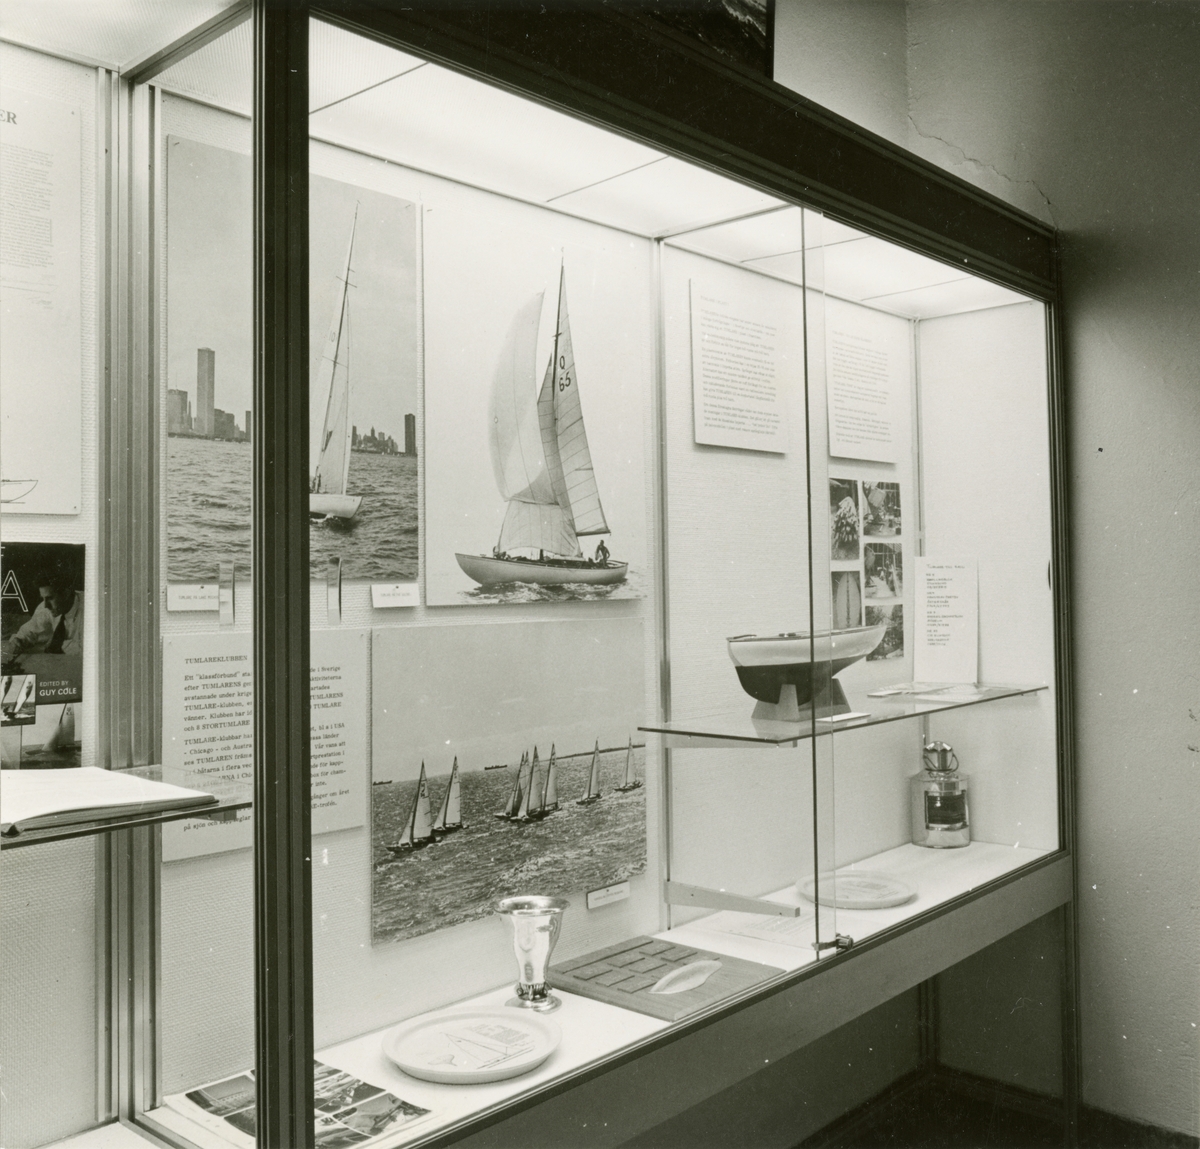 Utställningen "Tumlaren 50 år". Del av utställning i trappmonter med fartygsmodell, pokal m.m.